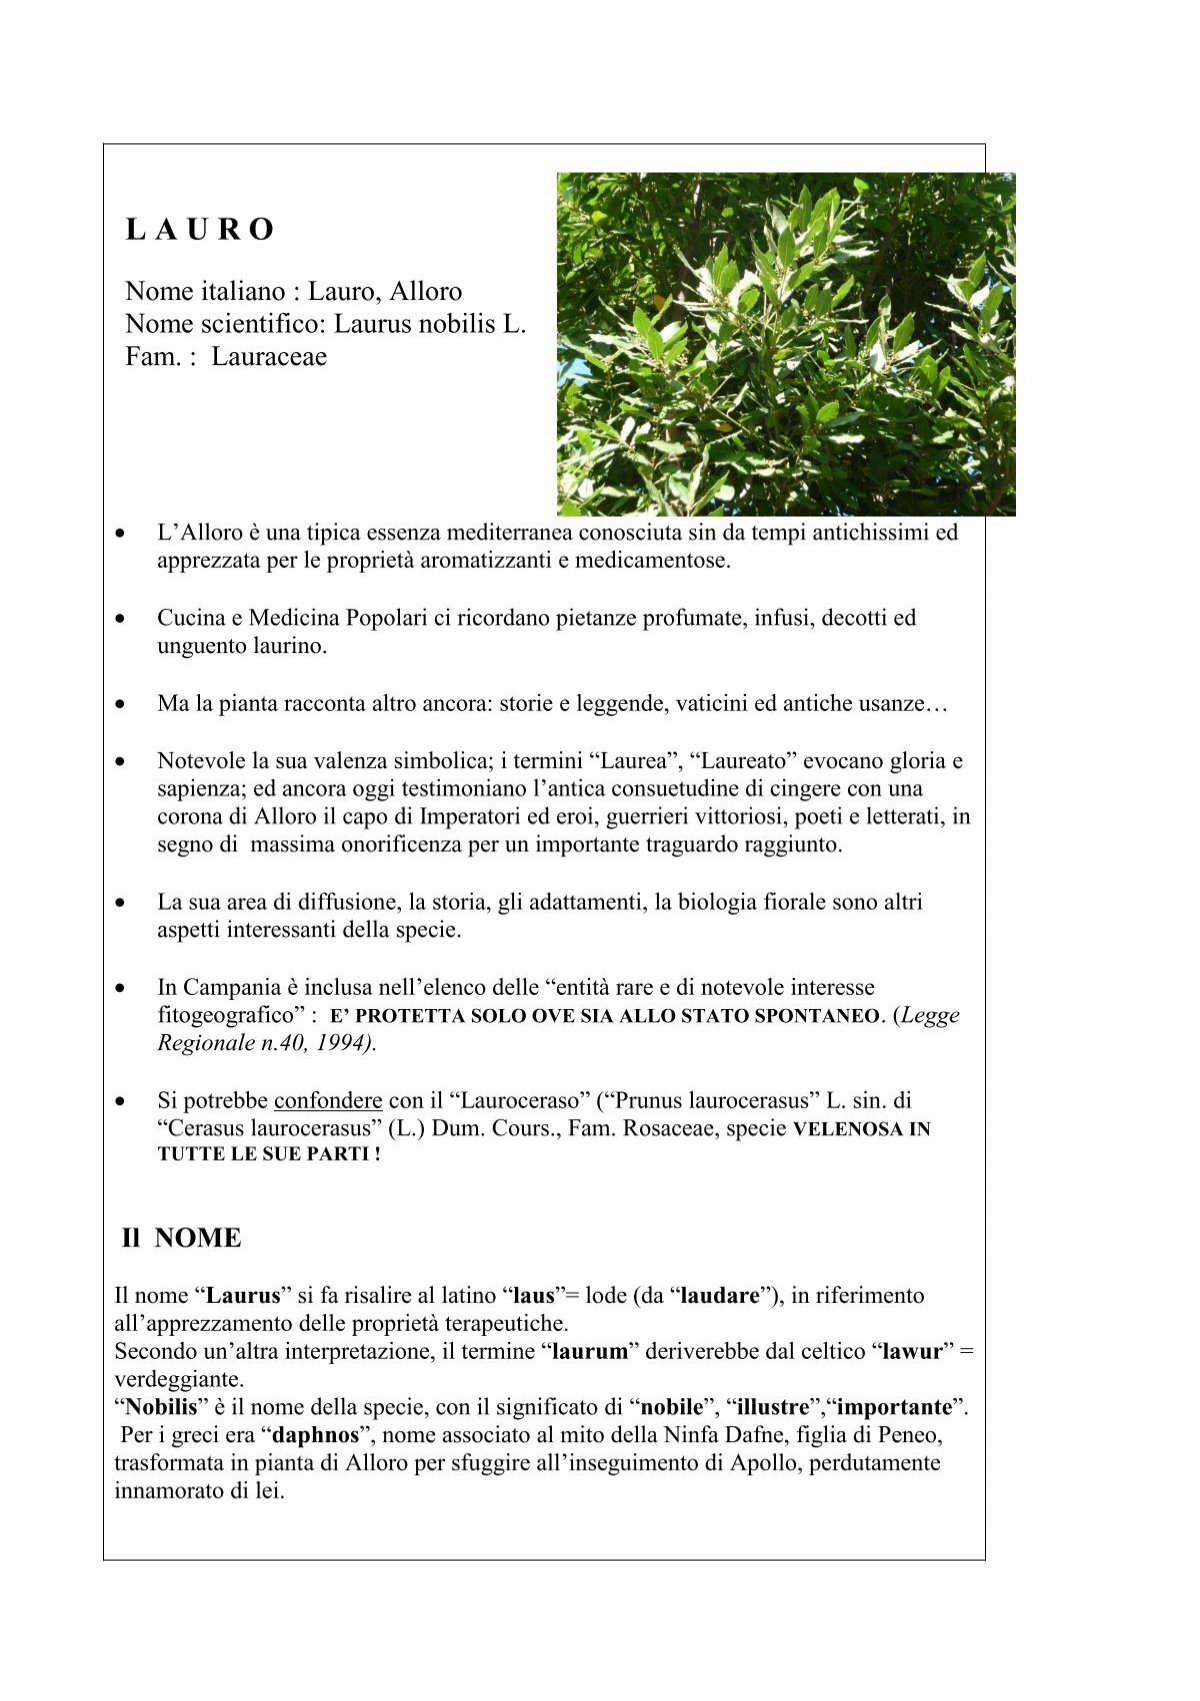 L'alloro, pianta tipica della Sardegna, ricca di proprietà